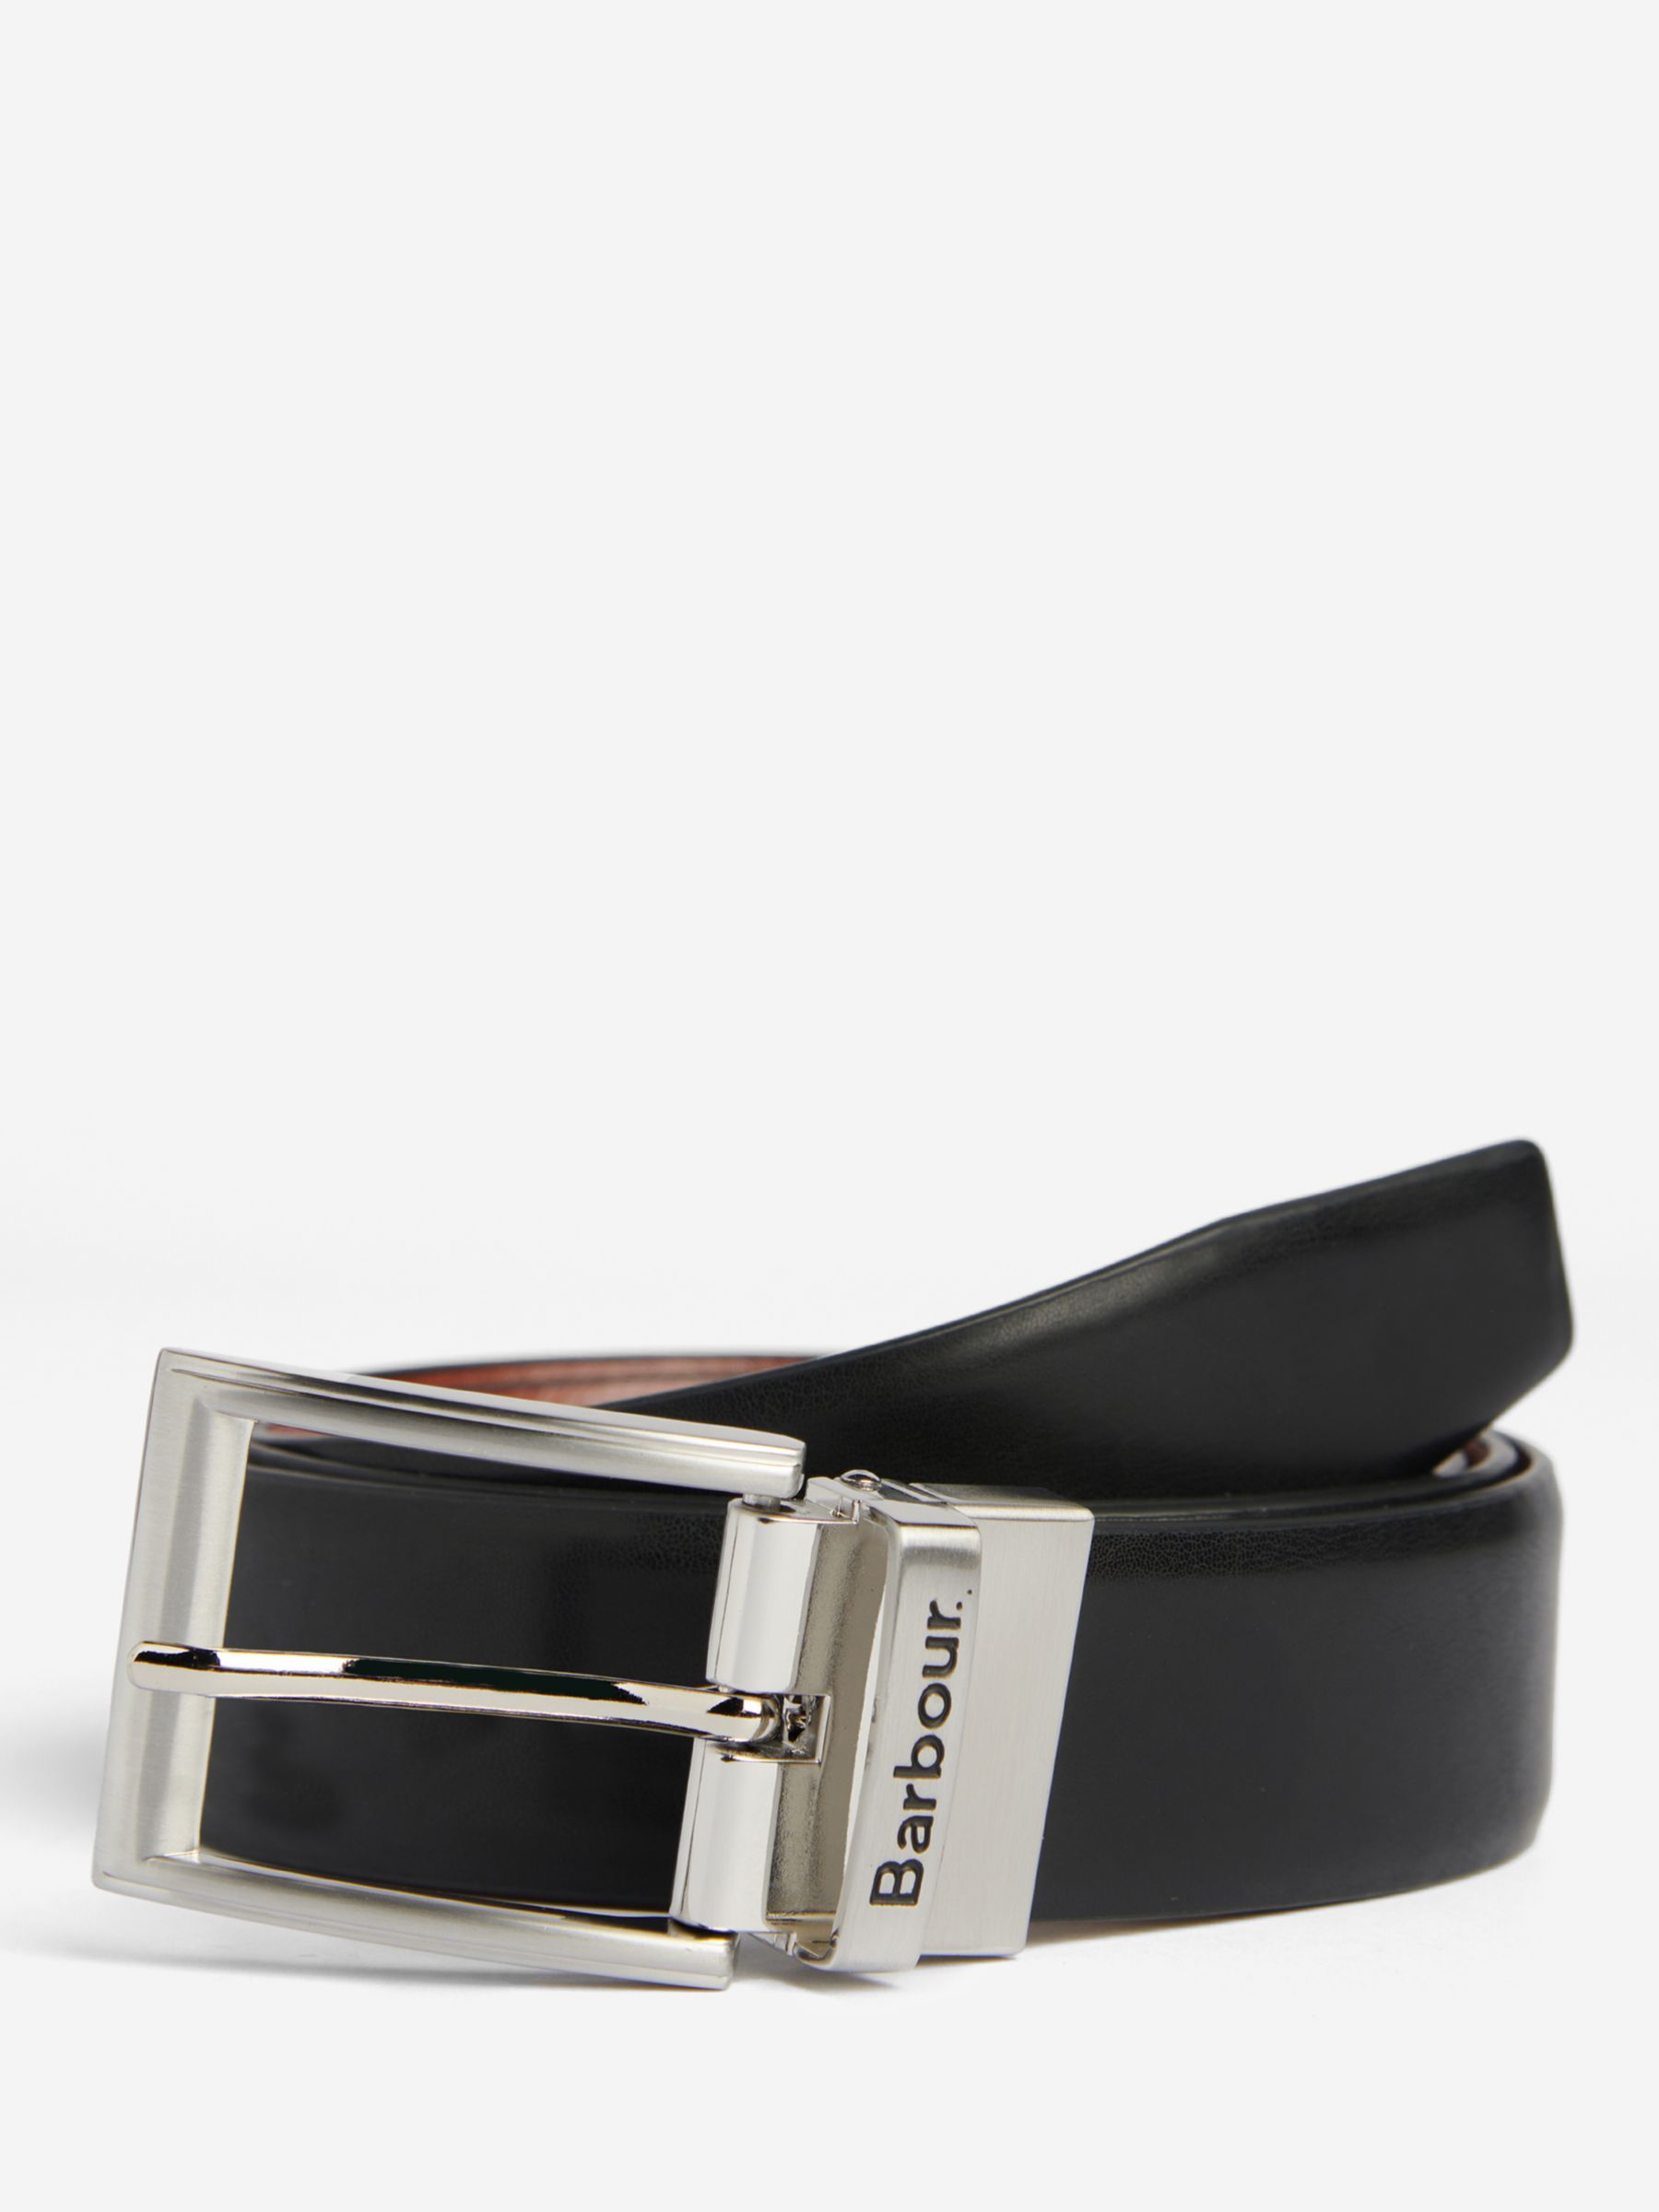 Barbour Fife Reversible Leather Belt, Black/Chestnut Brown, M